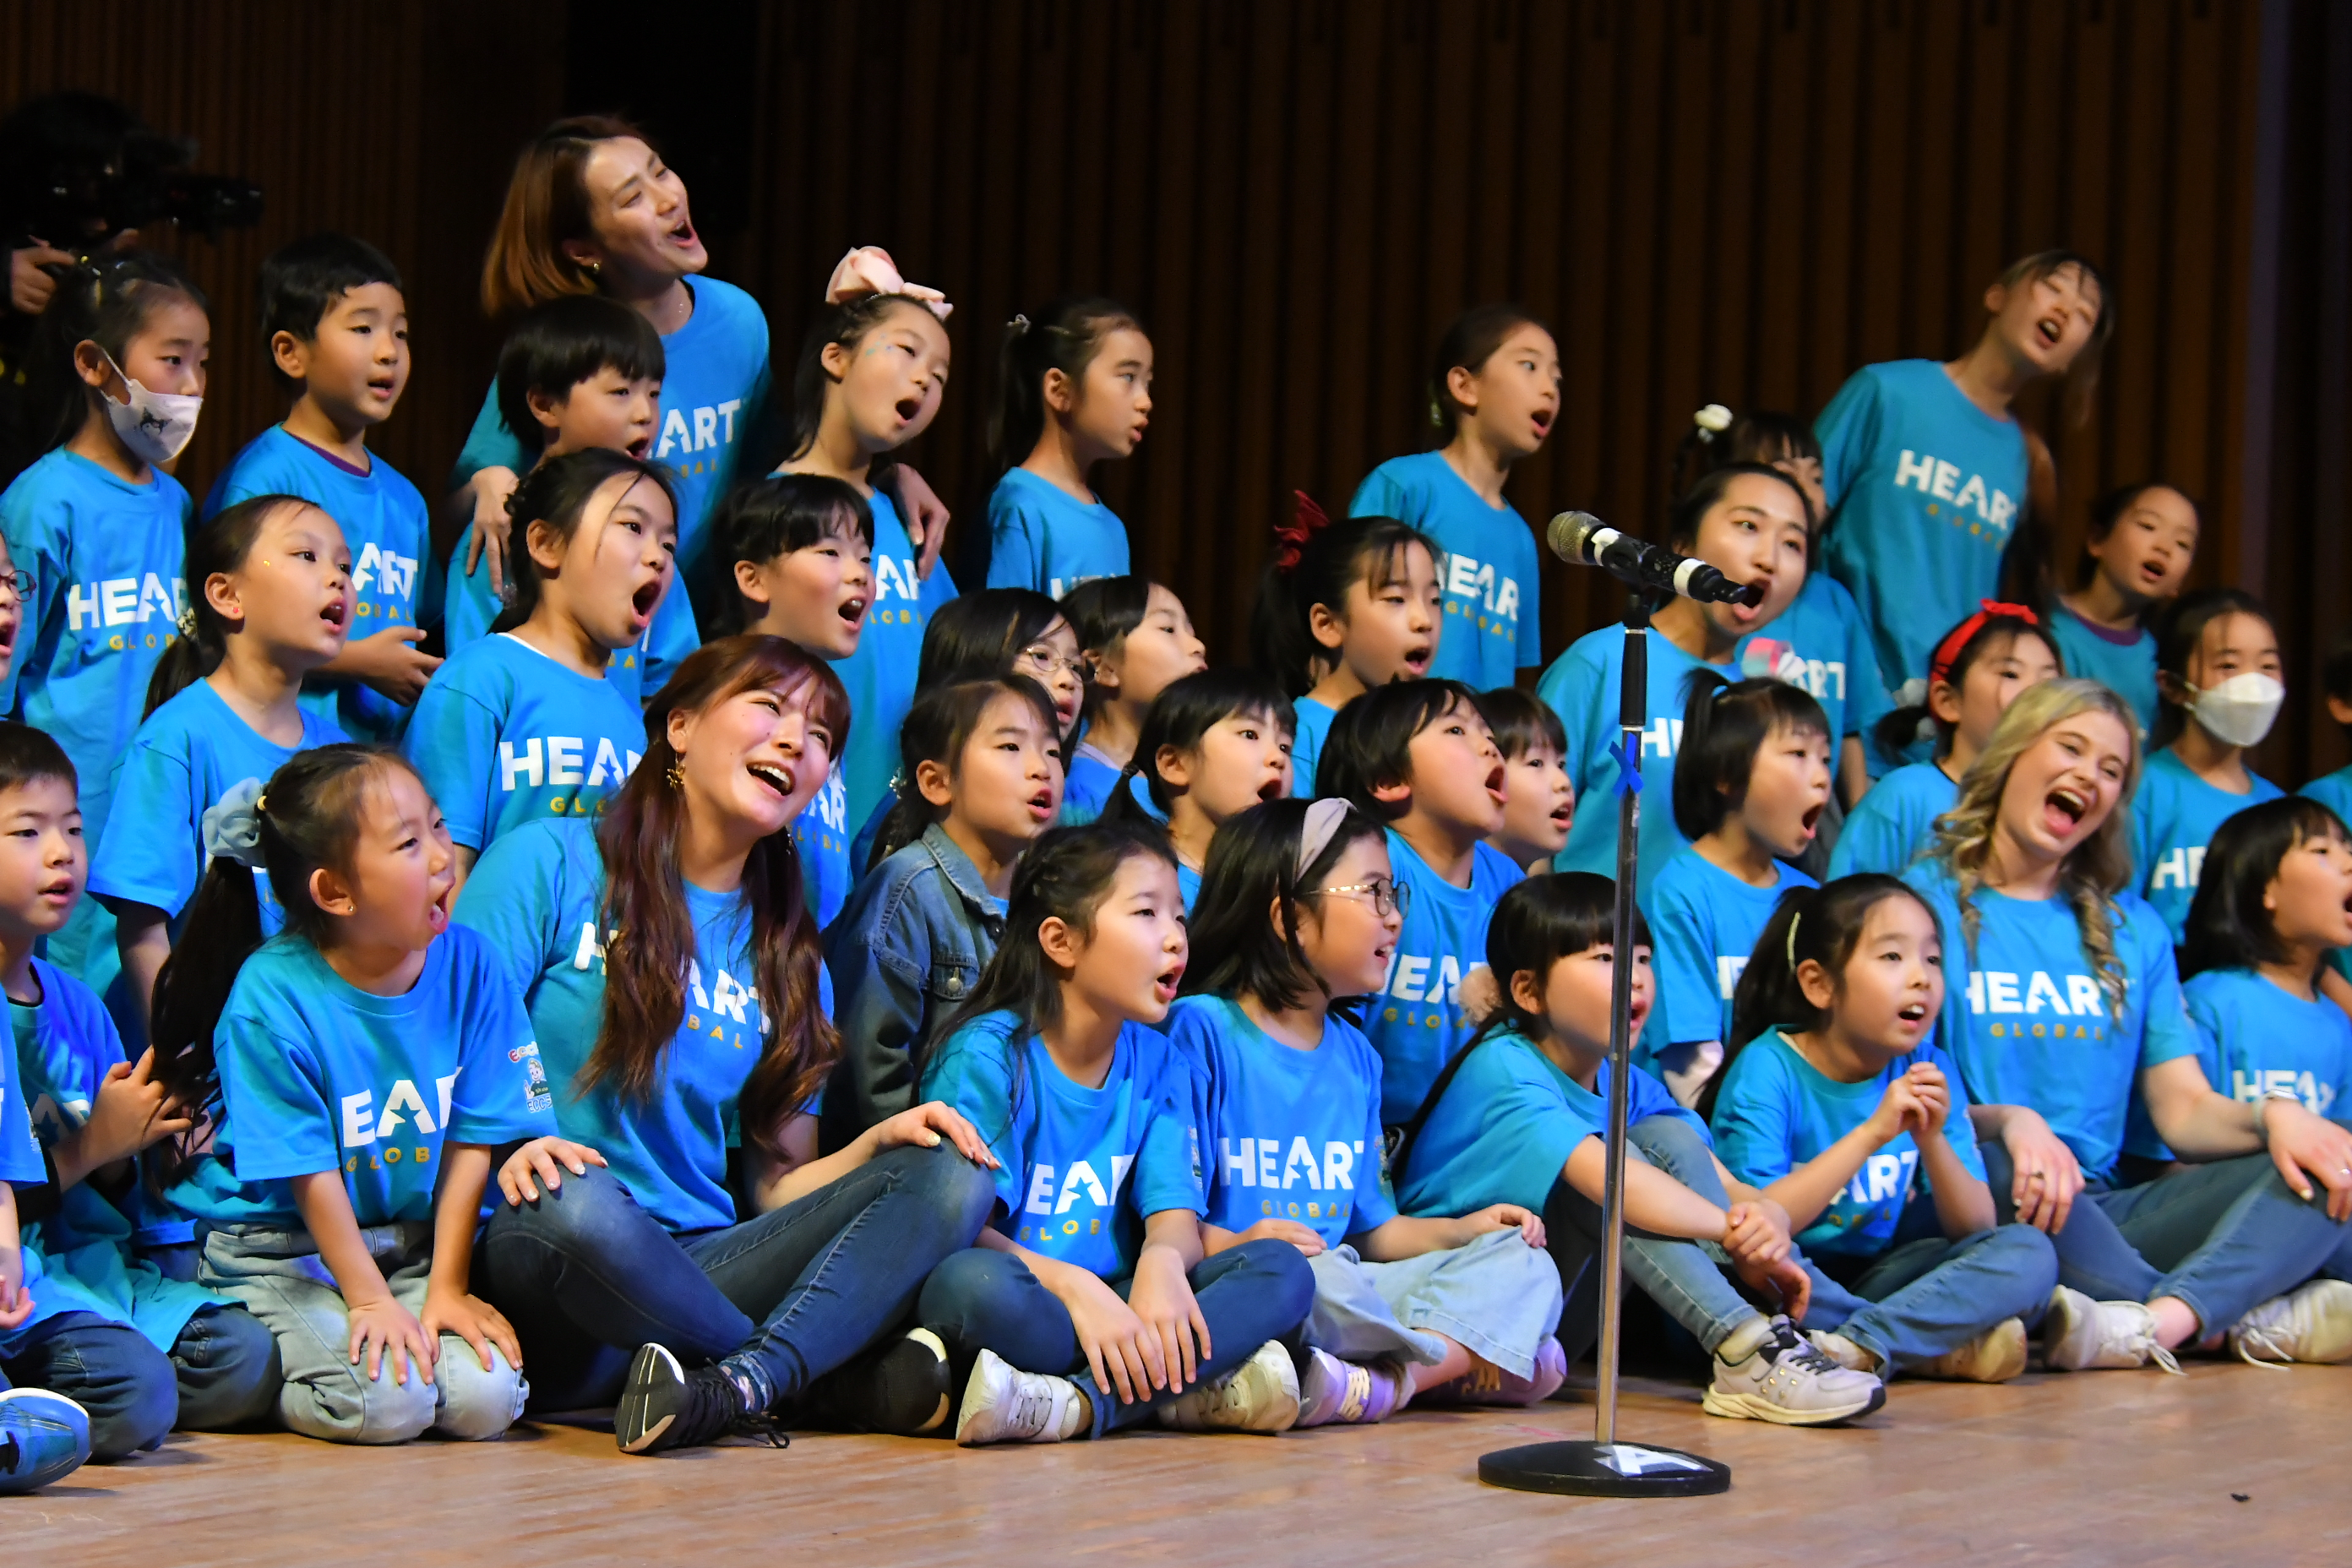 【5/31(金)~6/2(日)】HEART Global Music Outreach in 金沢@石川県立音楽堂 ~歌やダンスのワークショップ~(事前説明会あり)